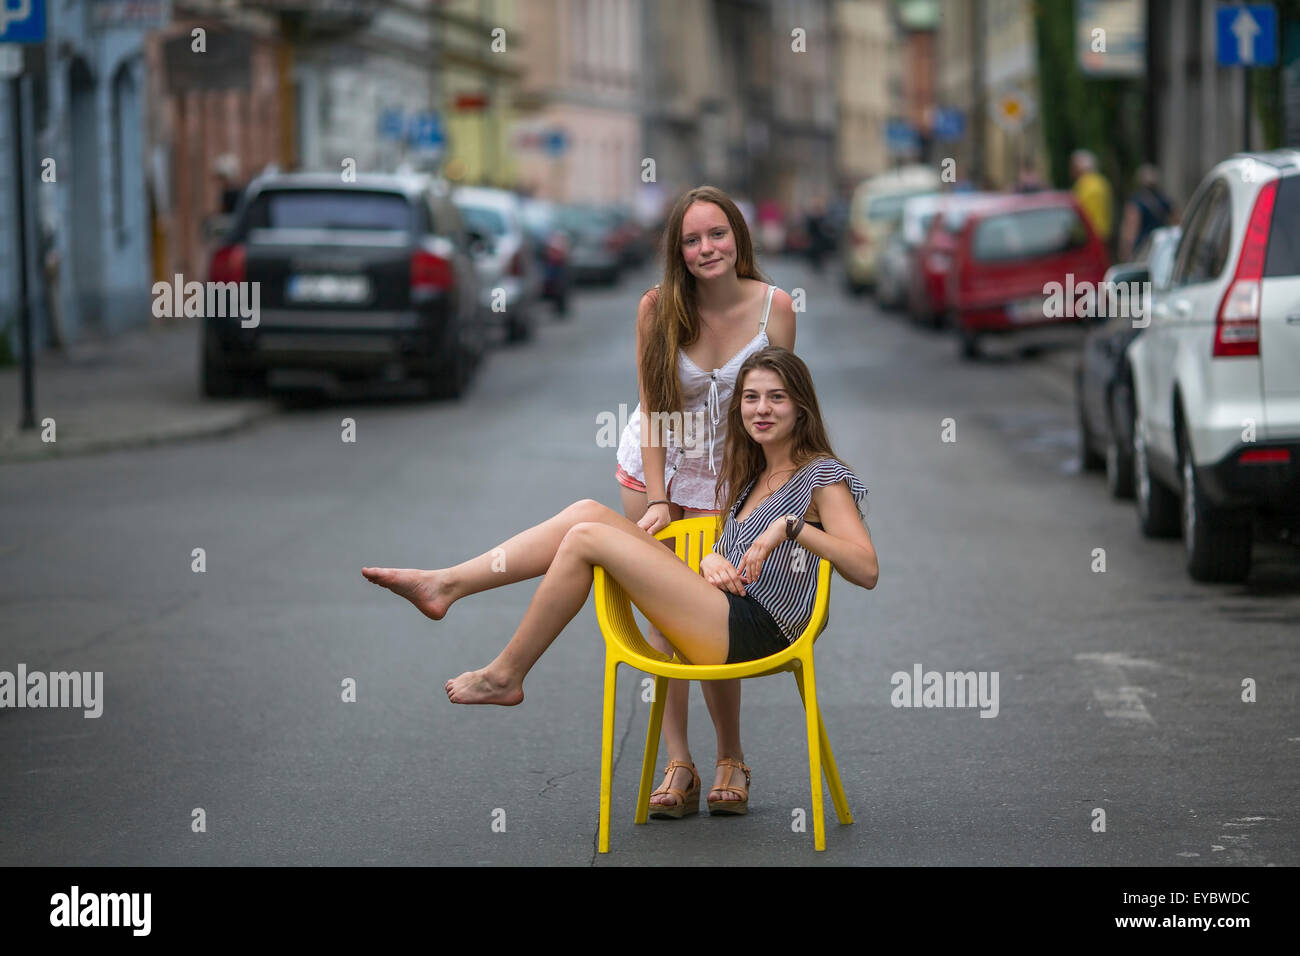 Deux jeunes filles petite amie. Photo conceptuelle, une fille de l'adolescence est assis sur une chaise au milieu de la rue, son ami se tient derrière Banque D'Images